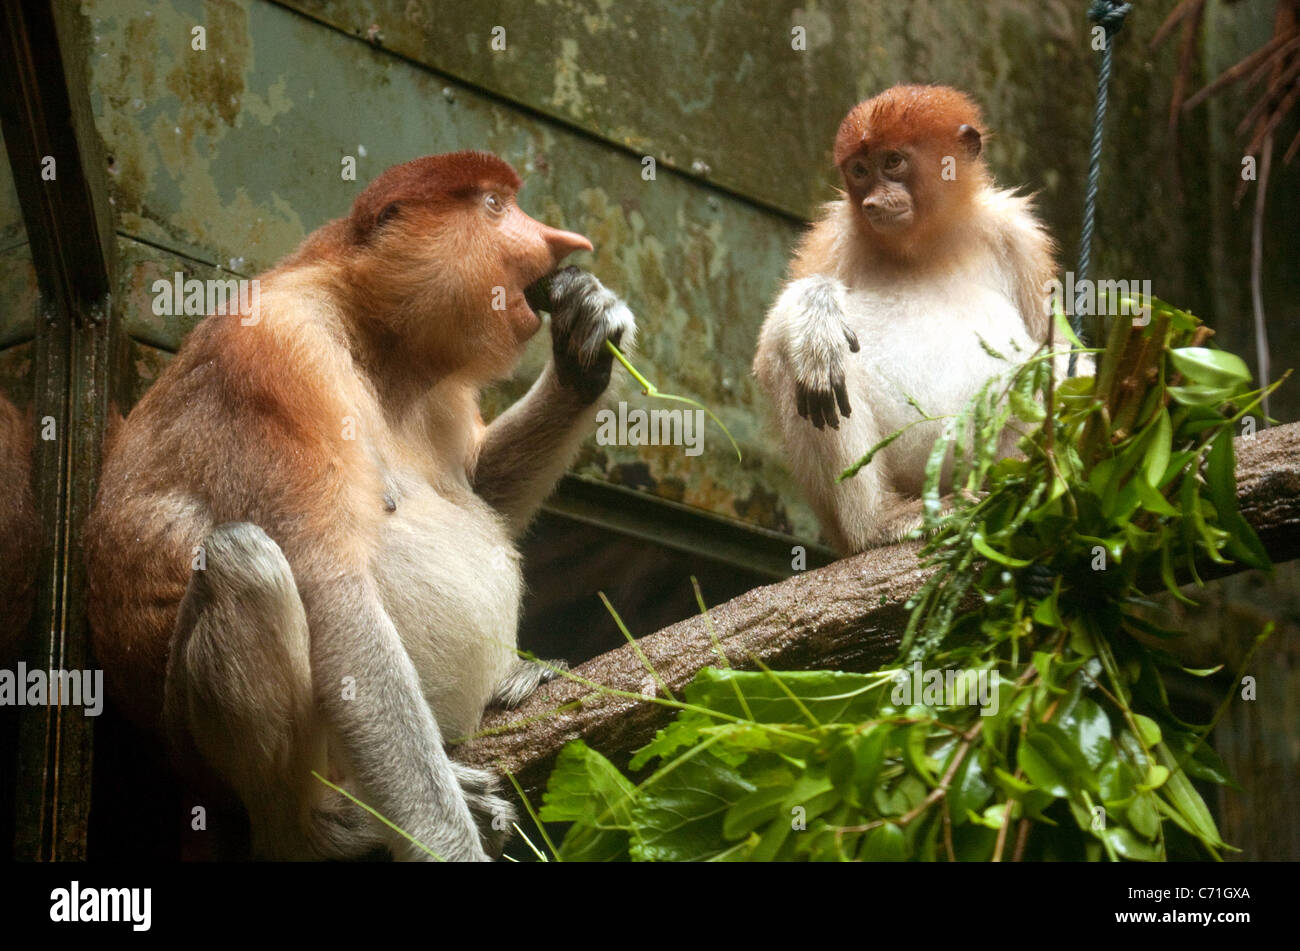 Adulti e adolescenti proboscide scimmie (Nasalis larvatus) nel Giardino Zoologico di Singapore, Singapore asia Foto Stock